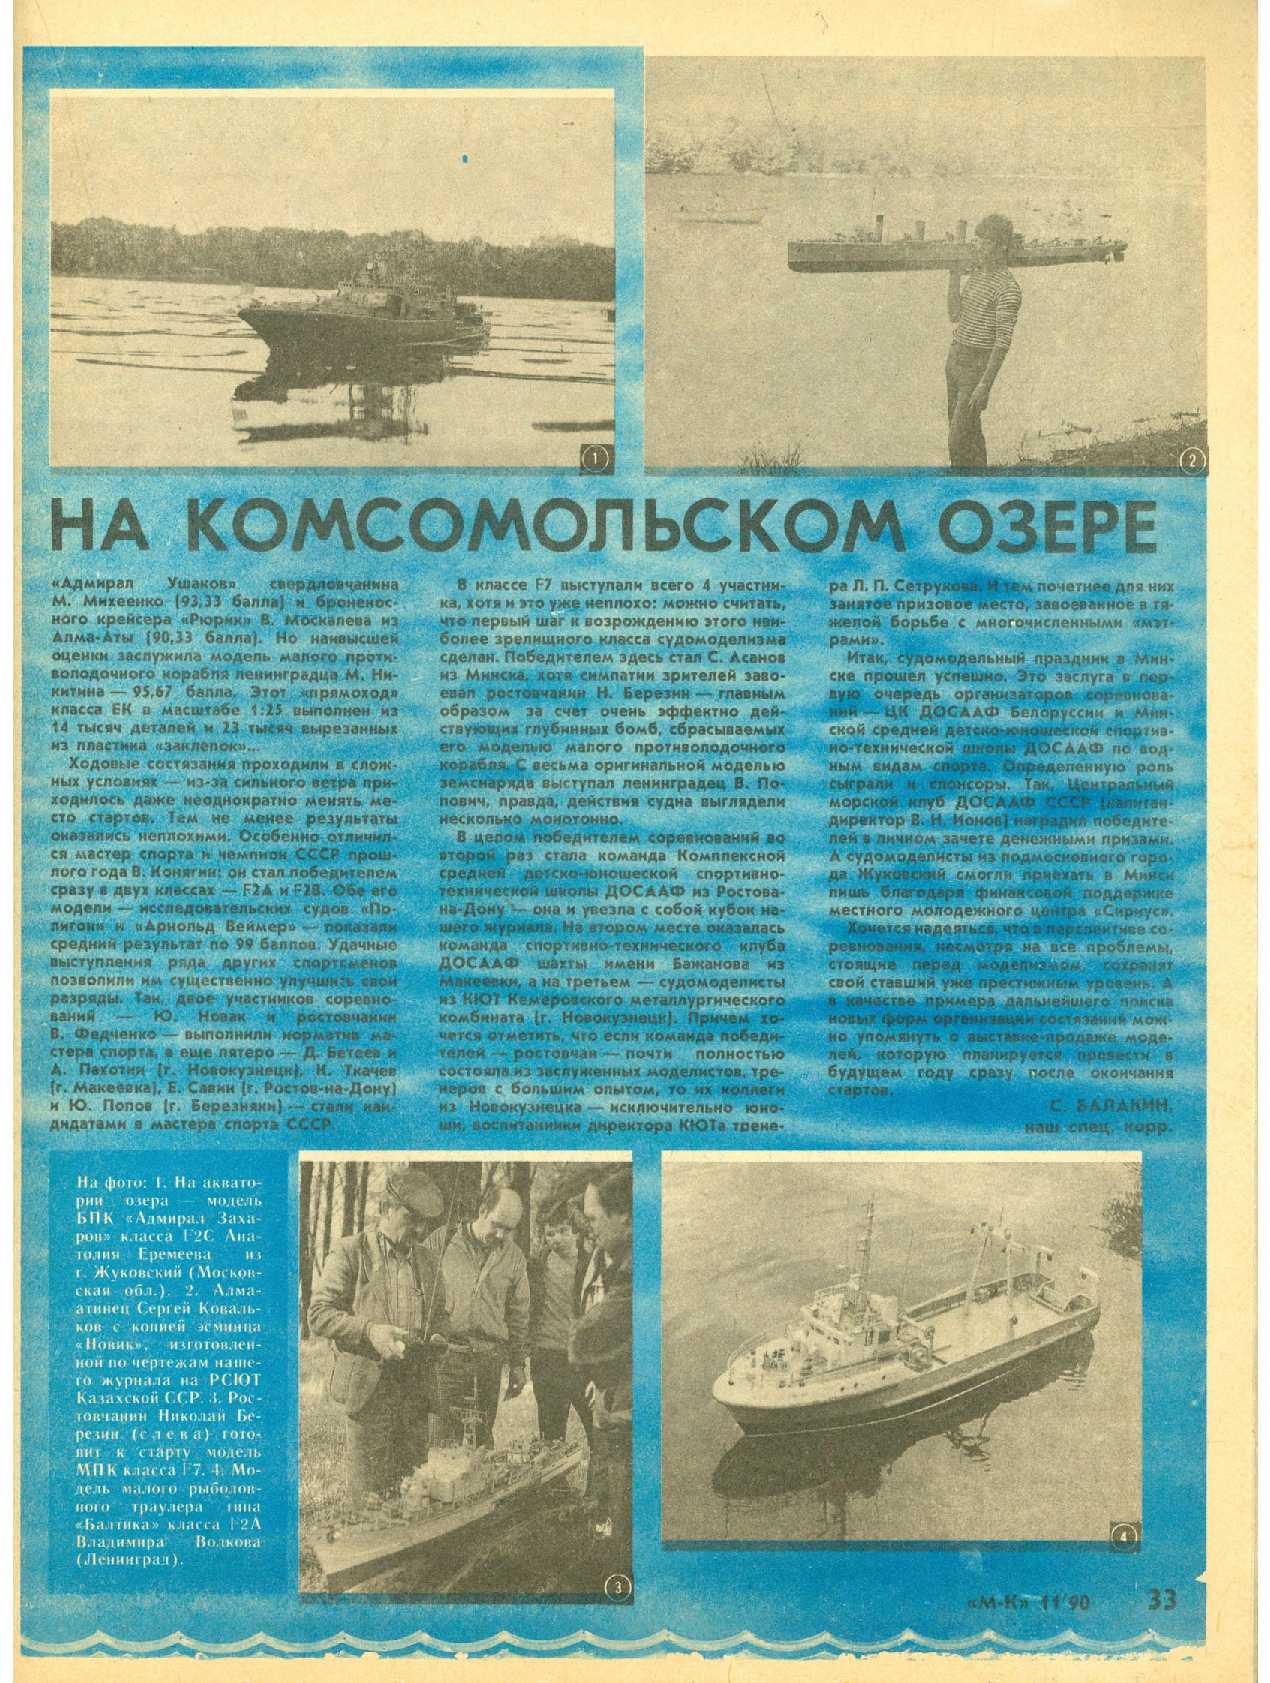 МК 11, 1990, 33 c.